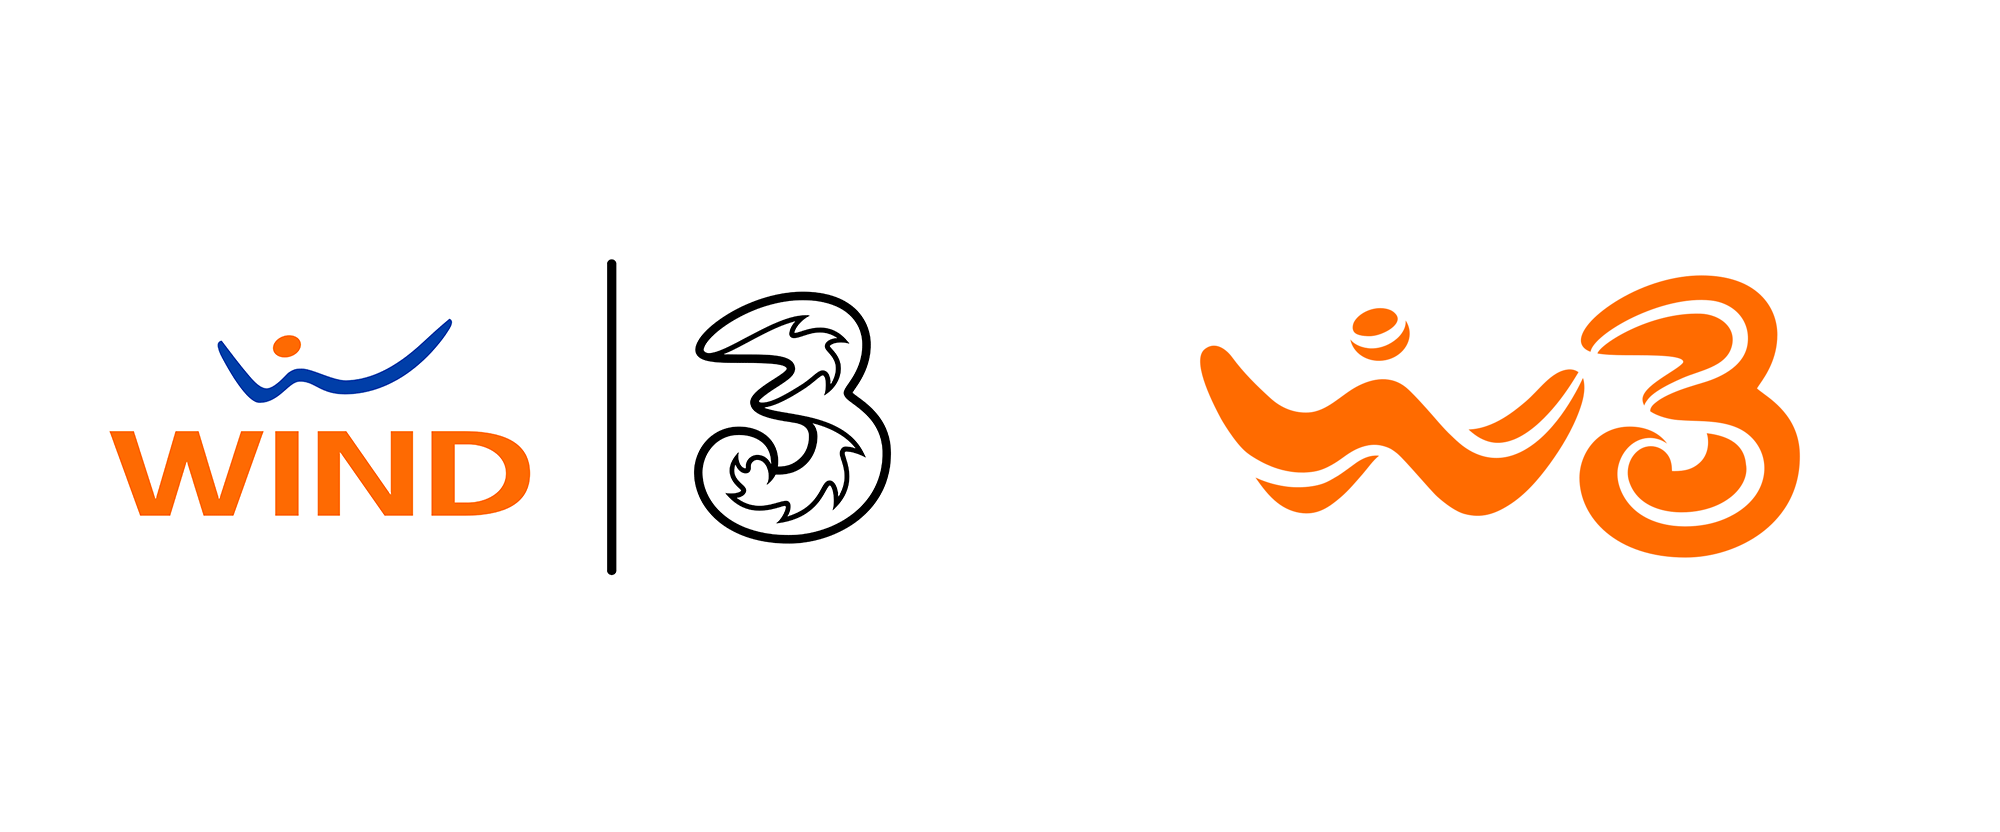 Update 75+ wind logo best - ceg.edu.vn